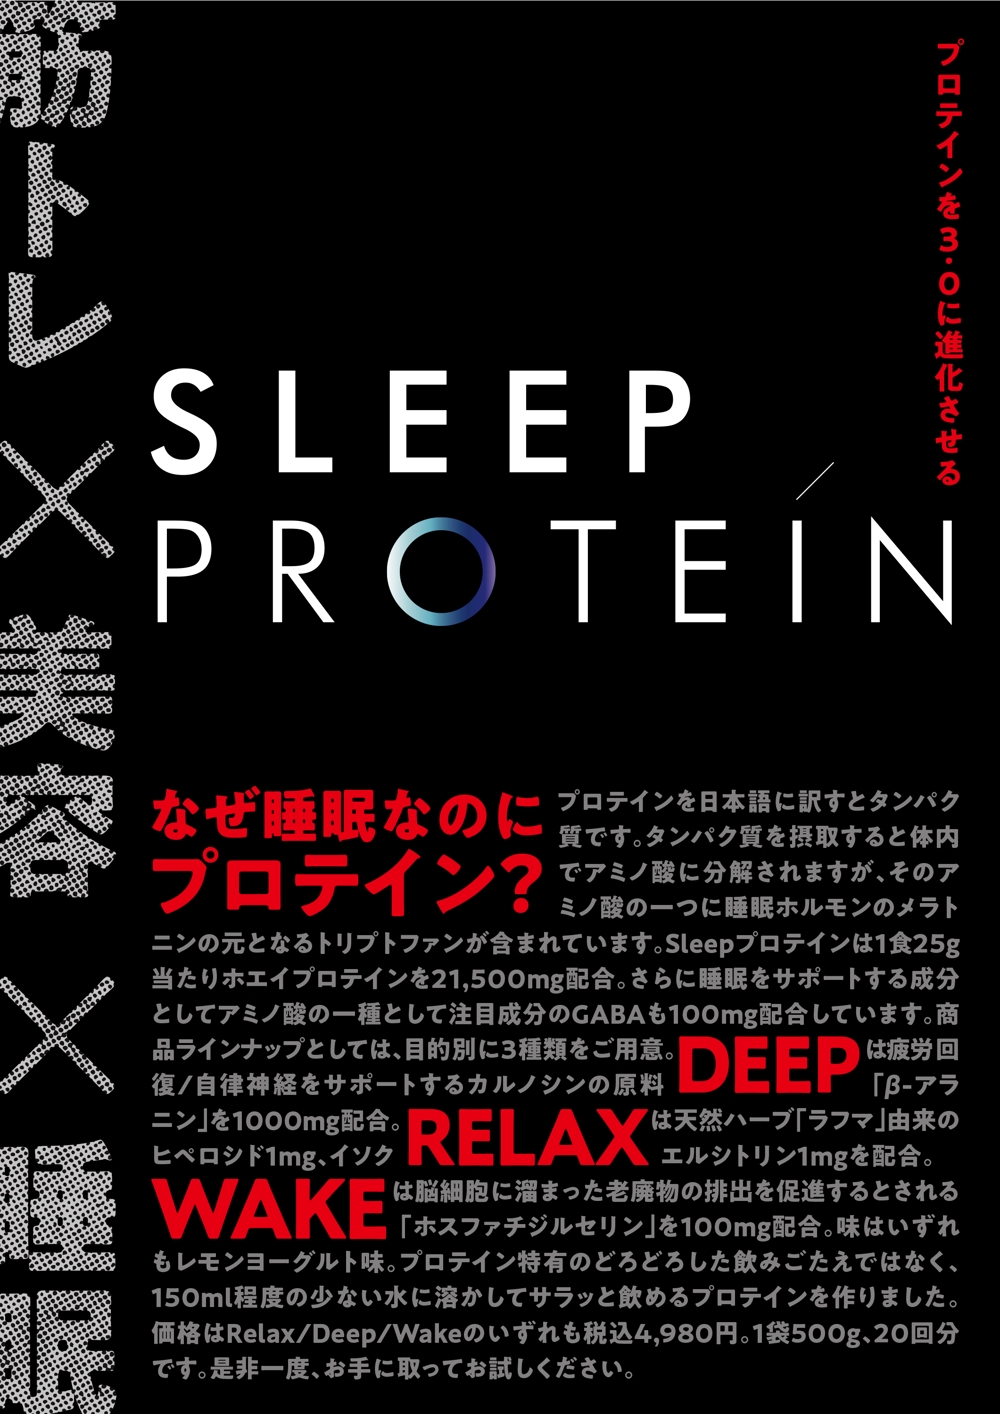 有楽町一等地のポップアップショップに置く「Sleepプロテイン」のA1ポスター